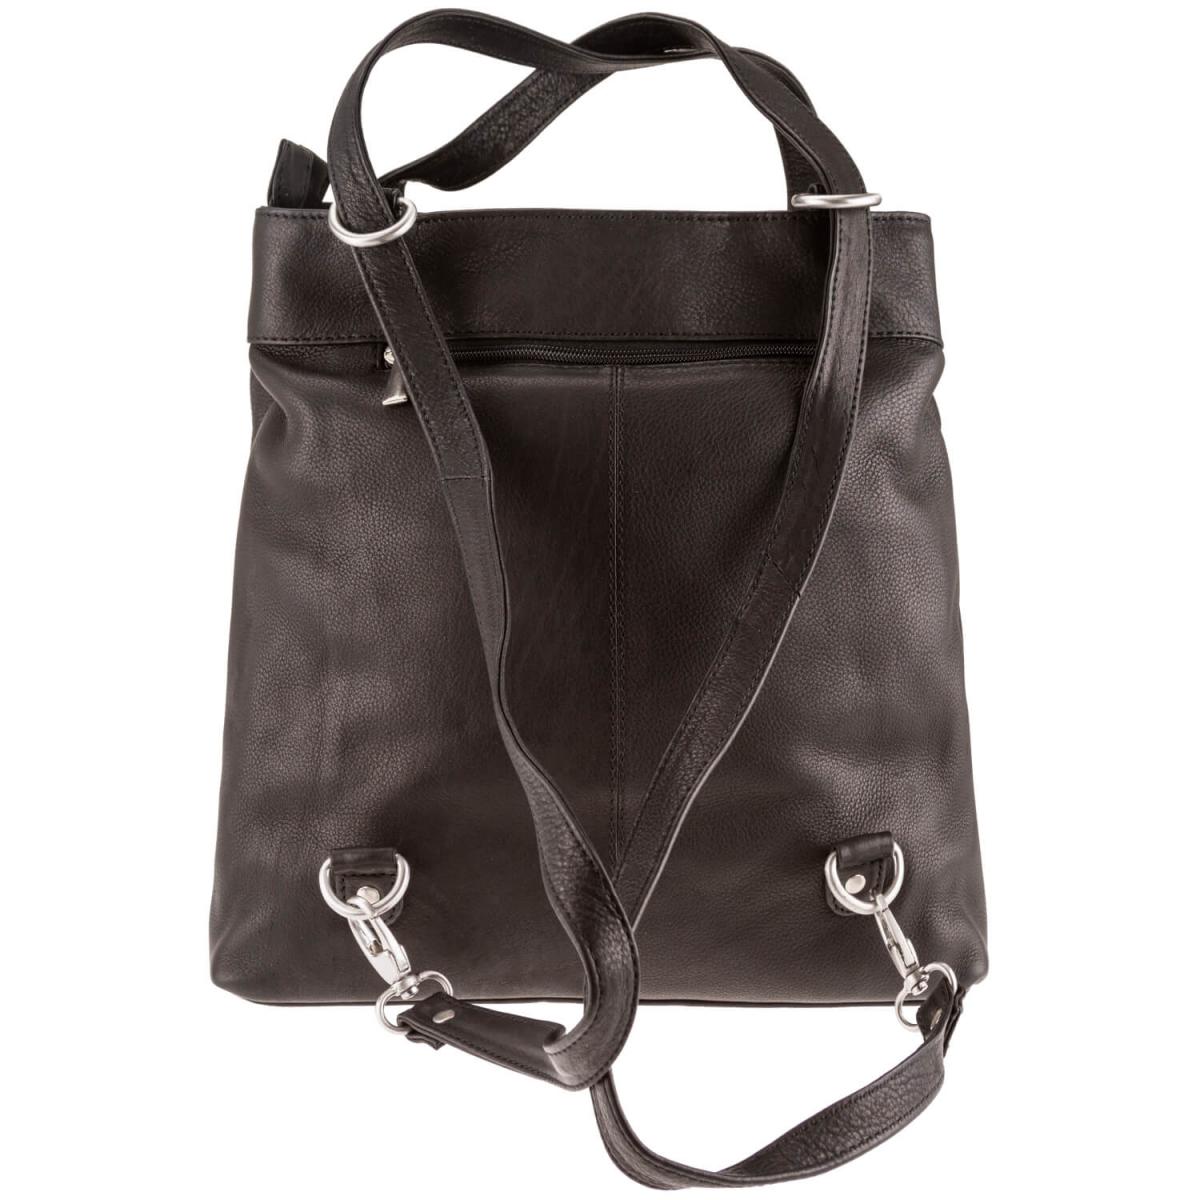 ALPENLEDER | Damen-Handtasche LIMA (schwarz) 4718-sw